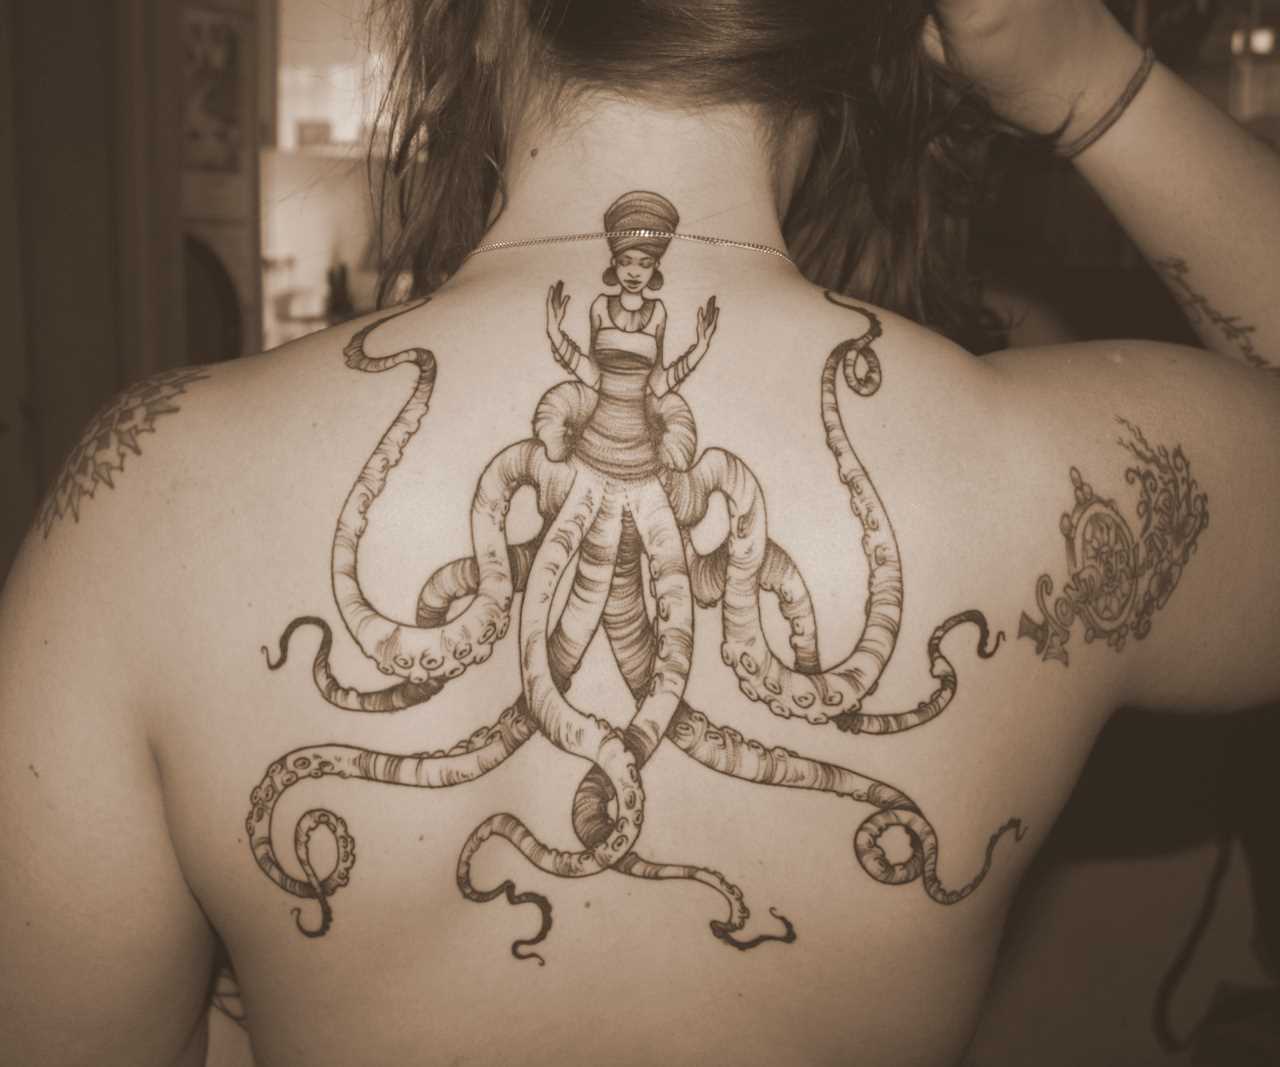 Tatuagem nas costas de uma menina - o polvo em forma de menina